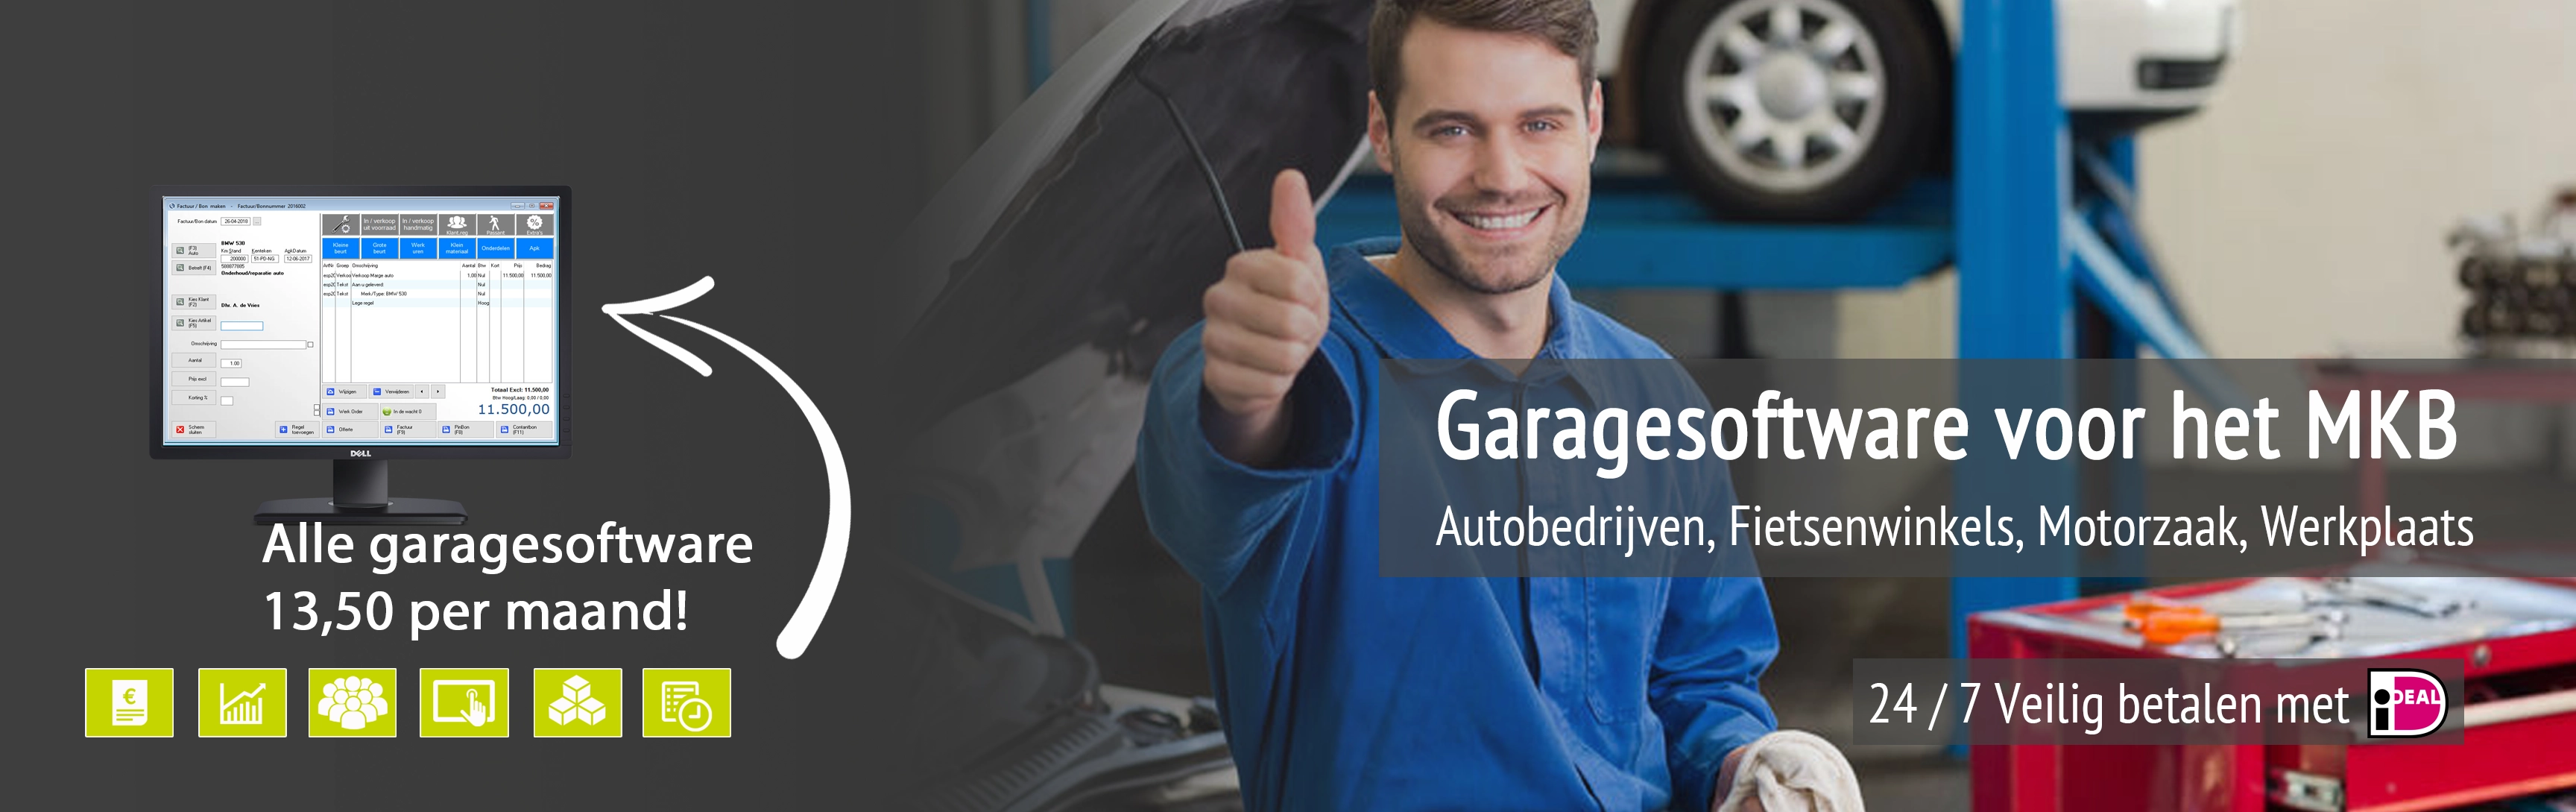 garagesoftware, garage software, software garage, garage programma voor slechts 13,50 p.m.